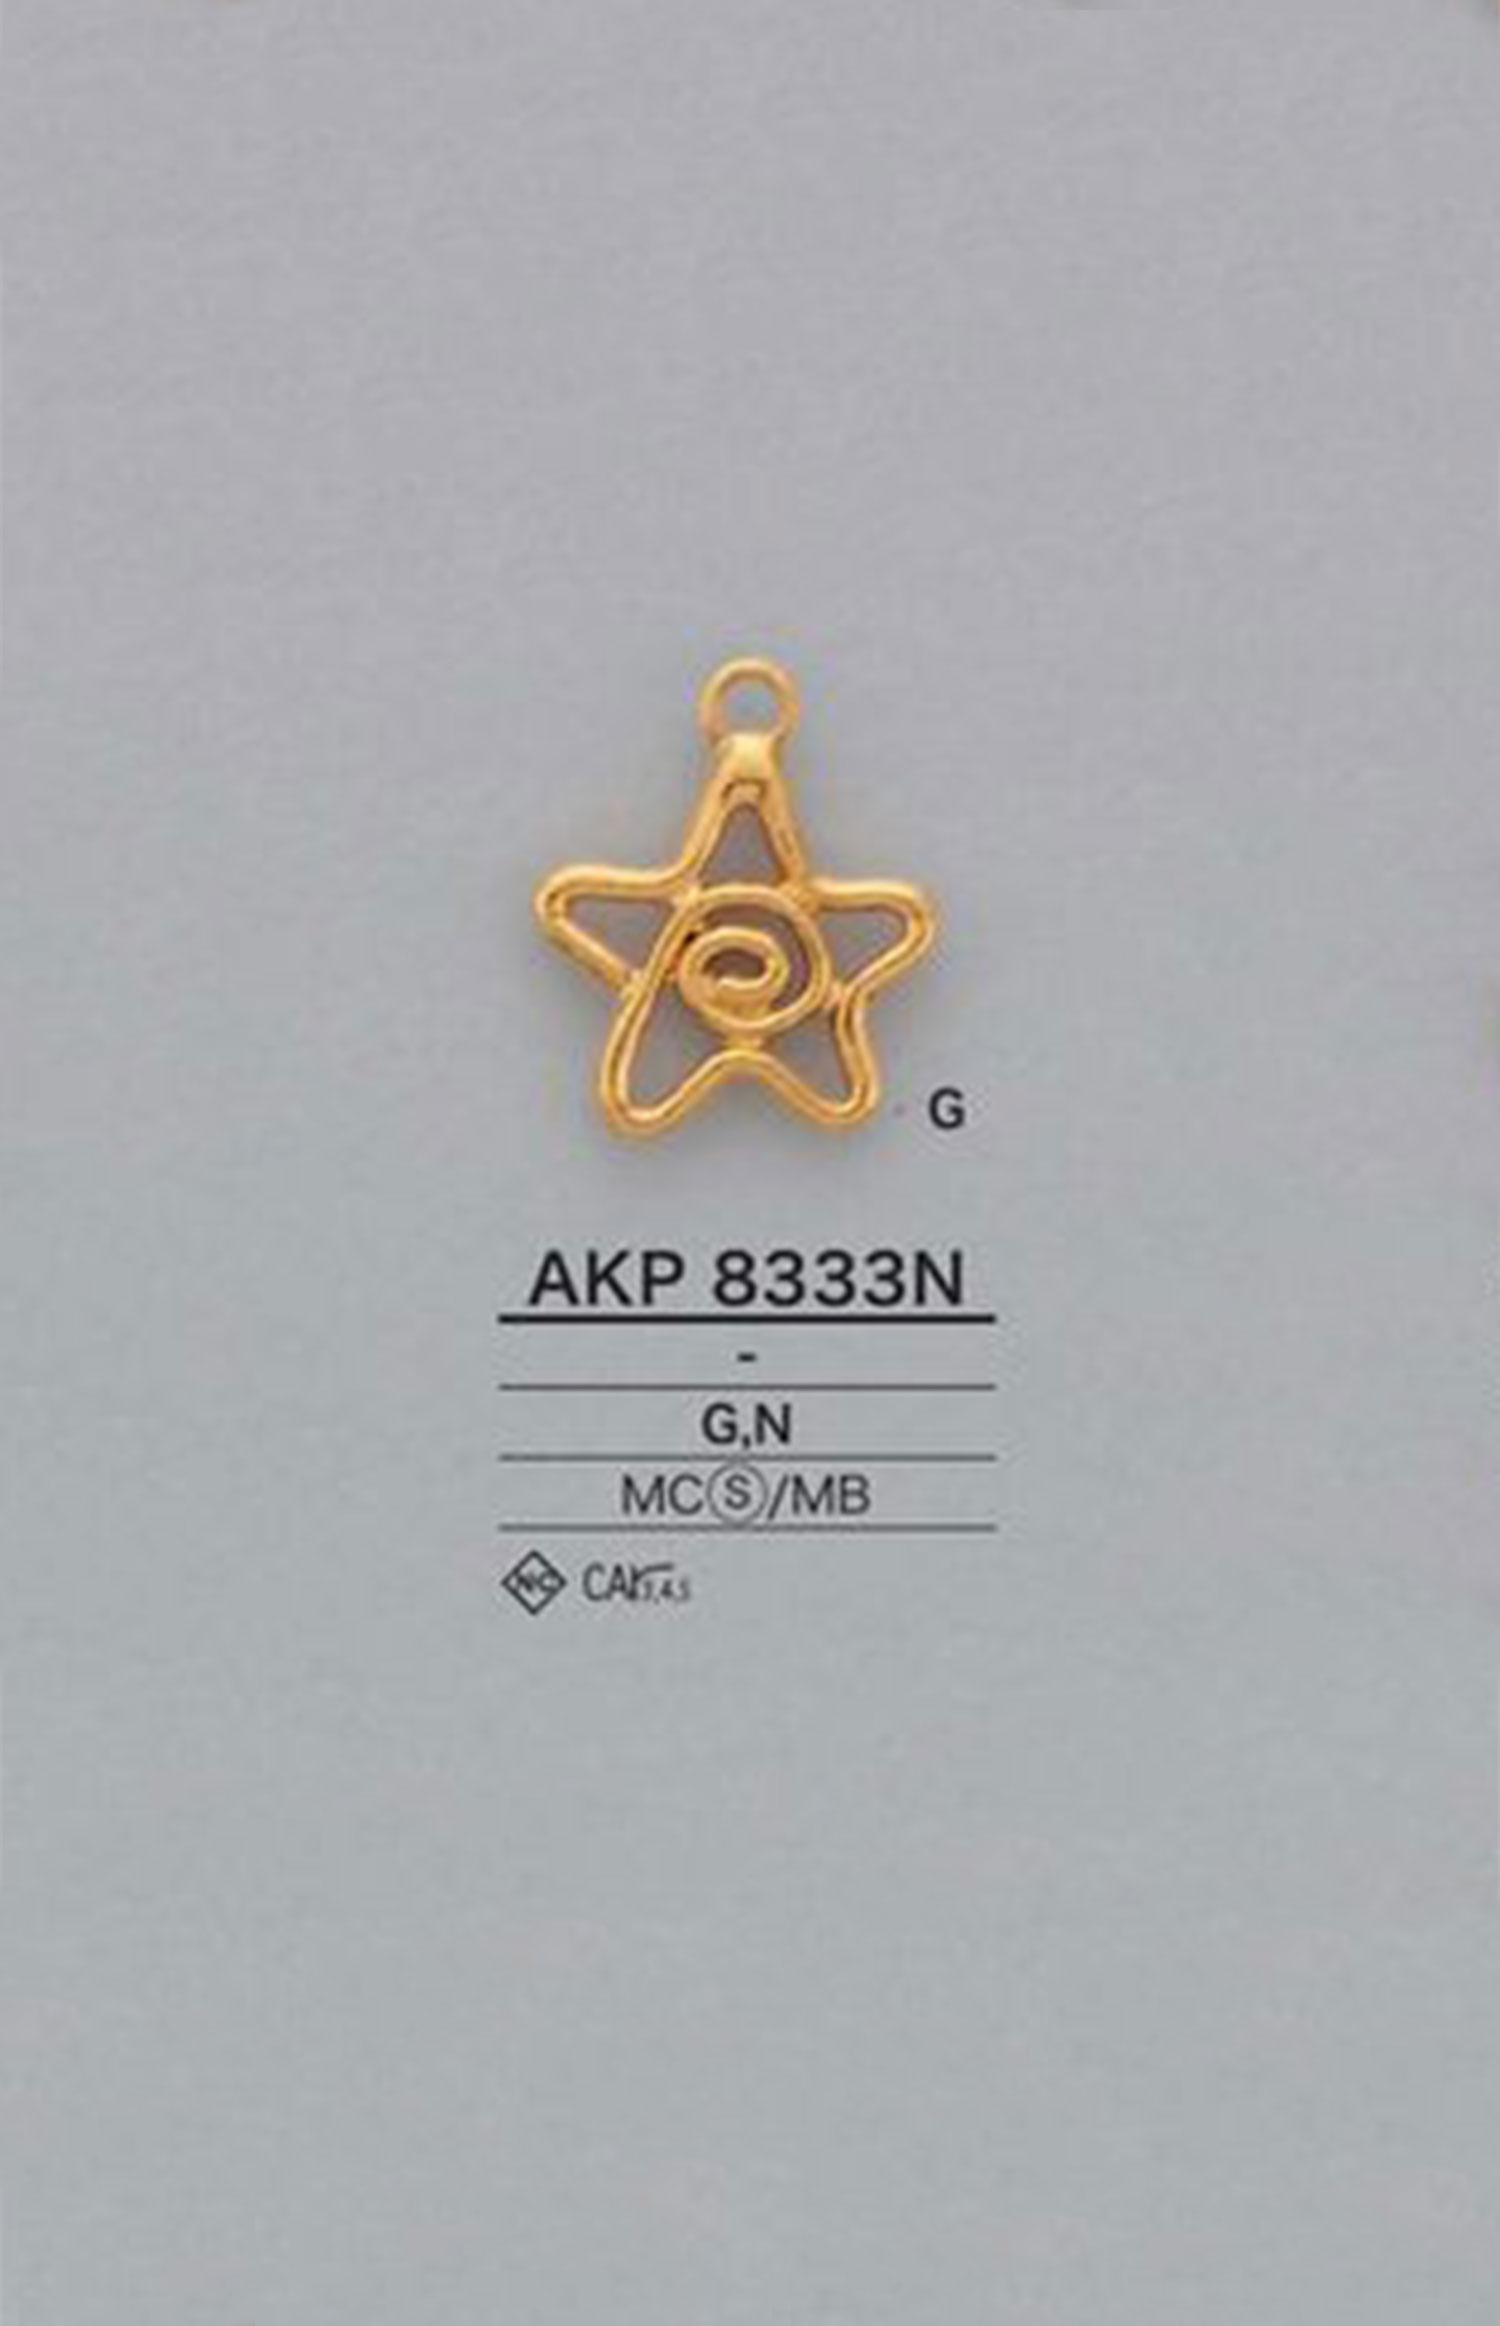 AKP8333N Stern-Reißverschlusspunkt (Zuglasche) IRIS